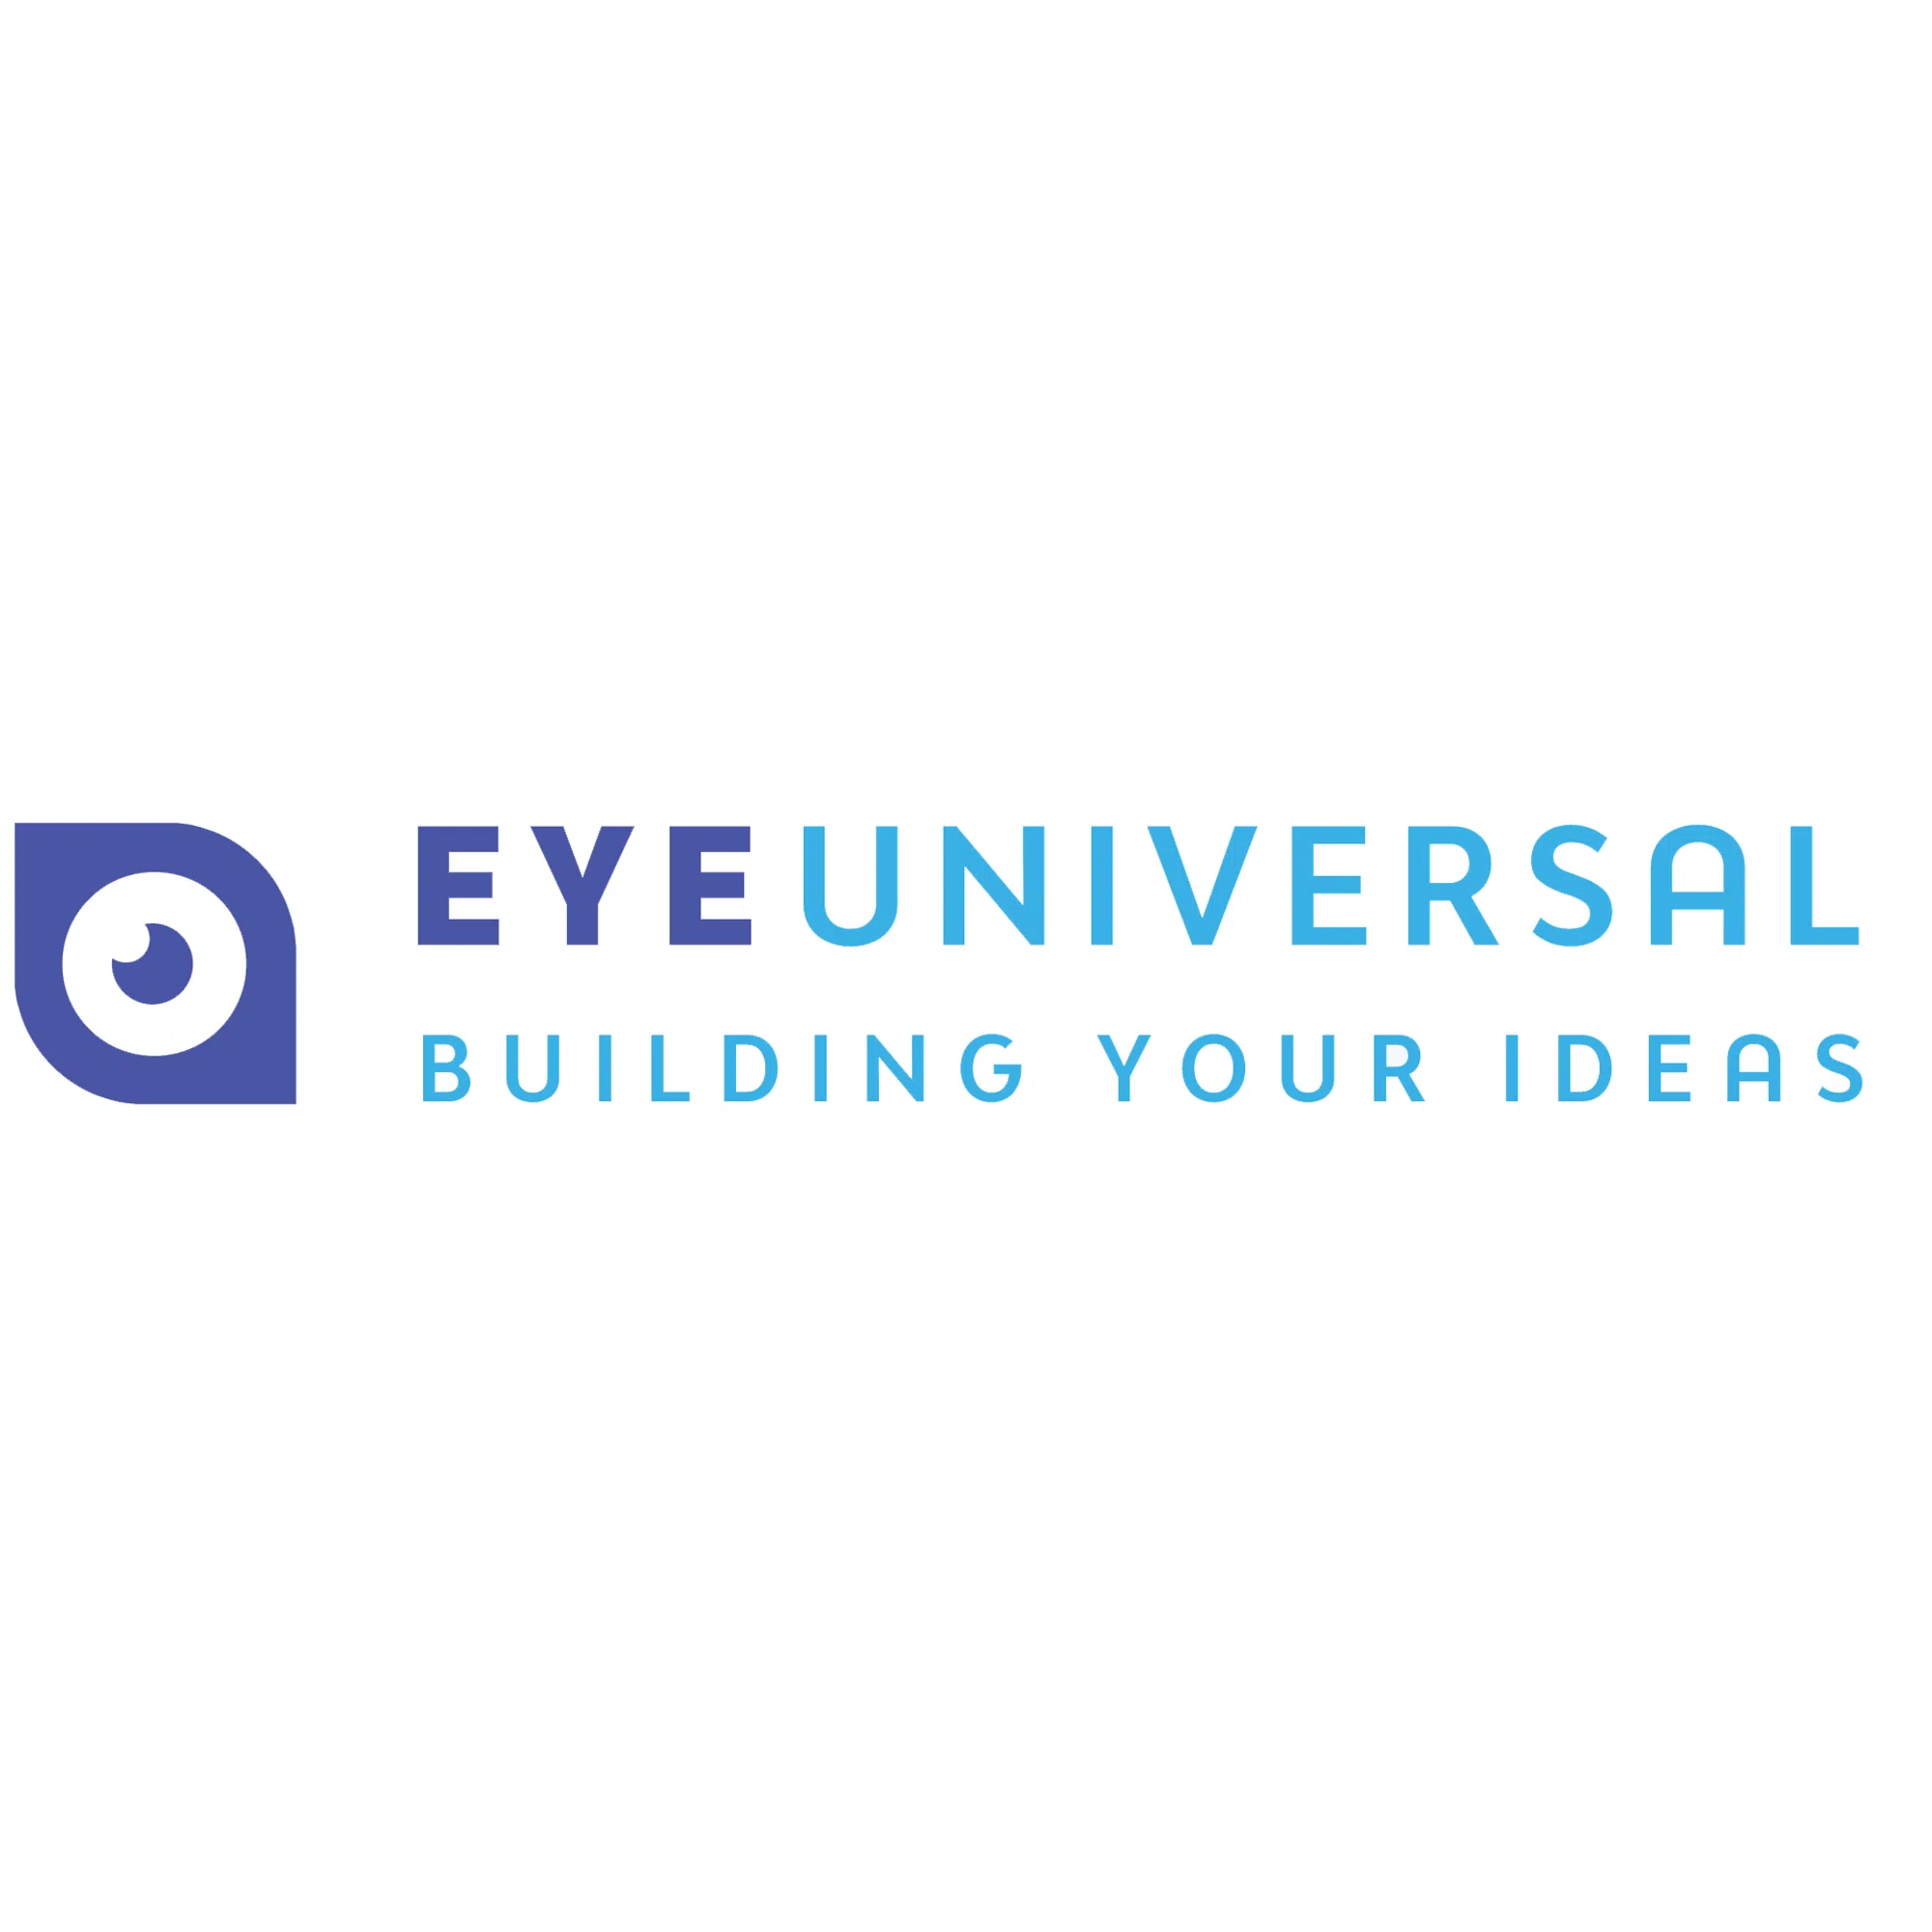 eyeuniversal.com logo